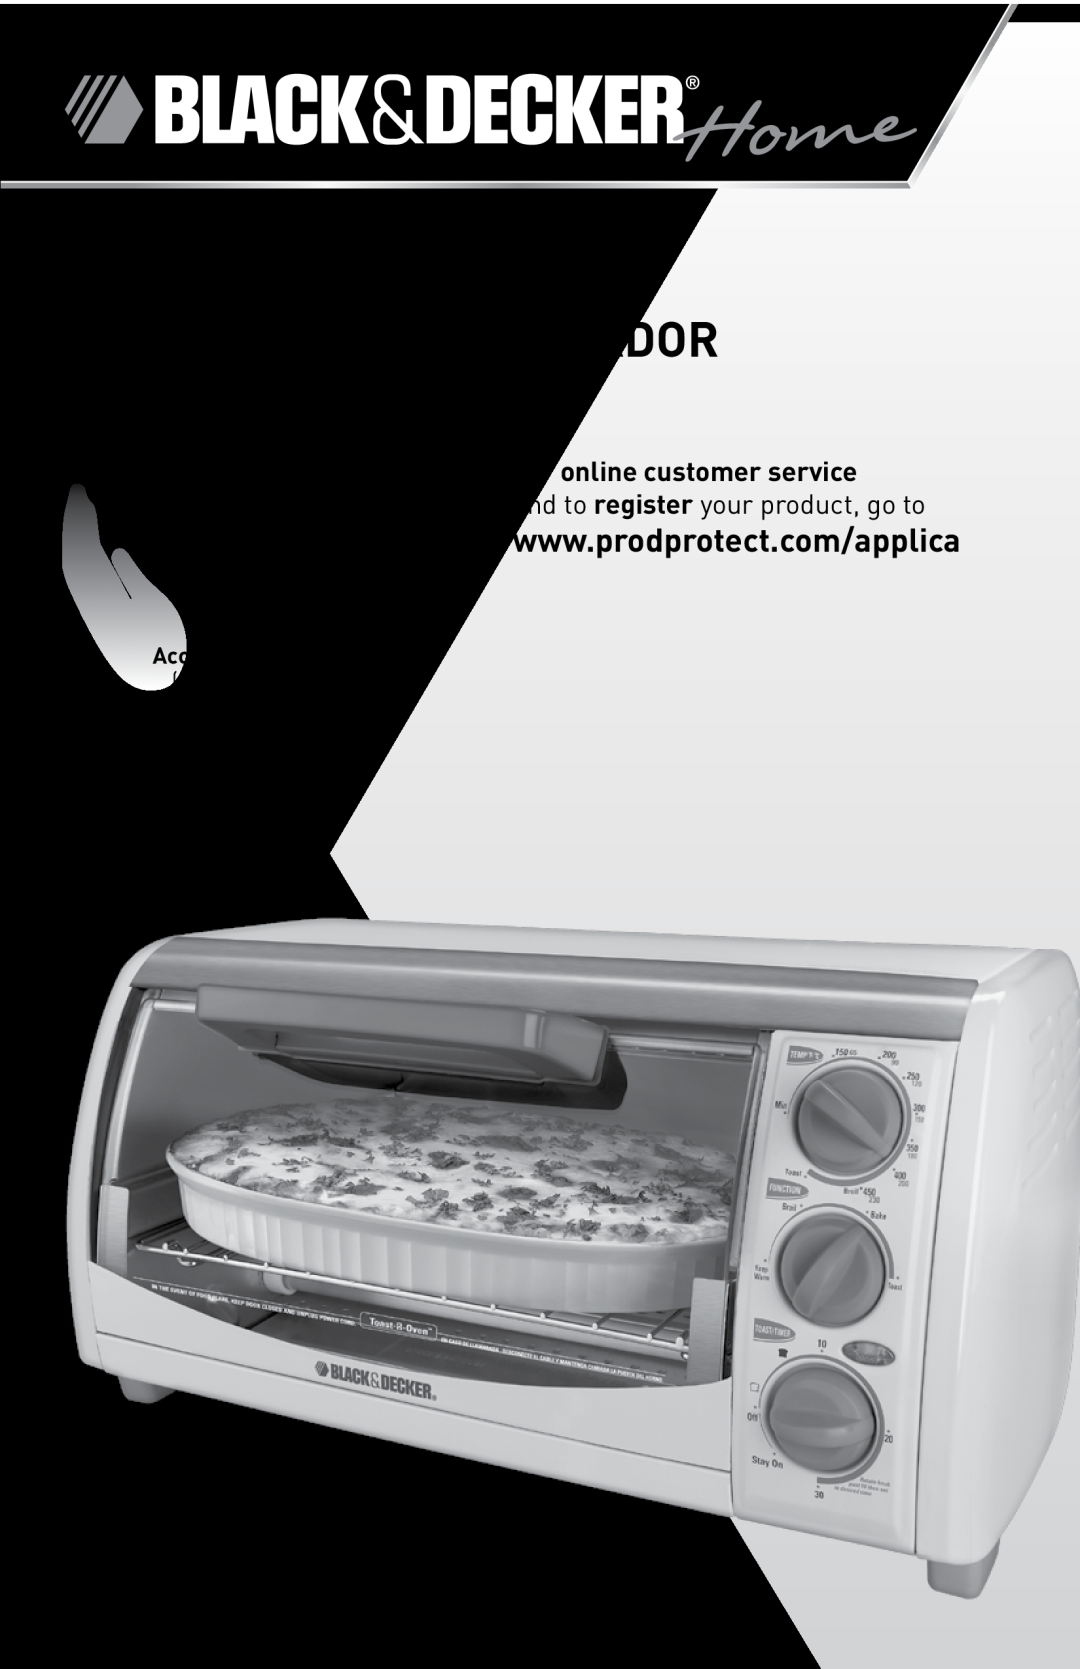 Black & Decker manual Countertop Oven HOrnO para Mostrador, Model/ModELO TRO490W, 01-714-2500, EE.UU / Canadá, Mexico 